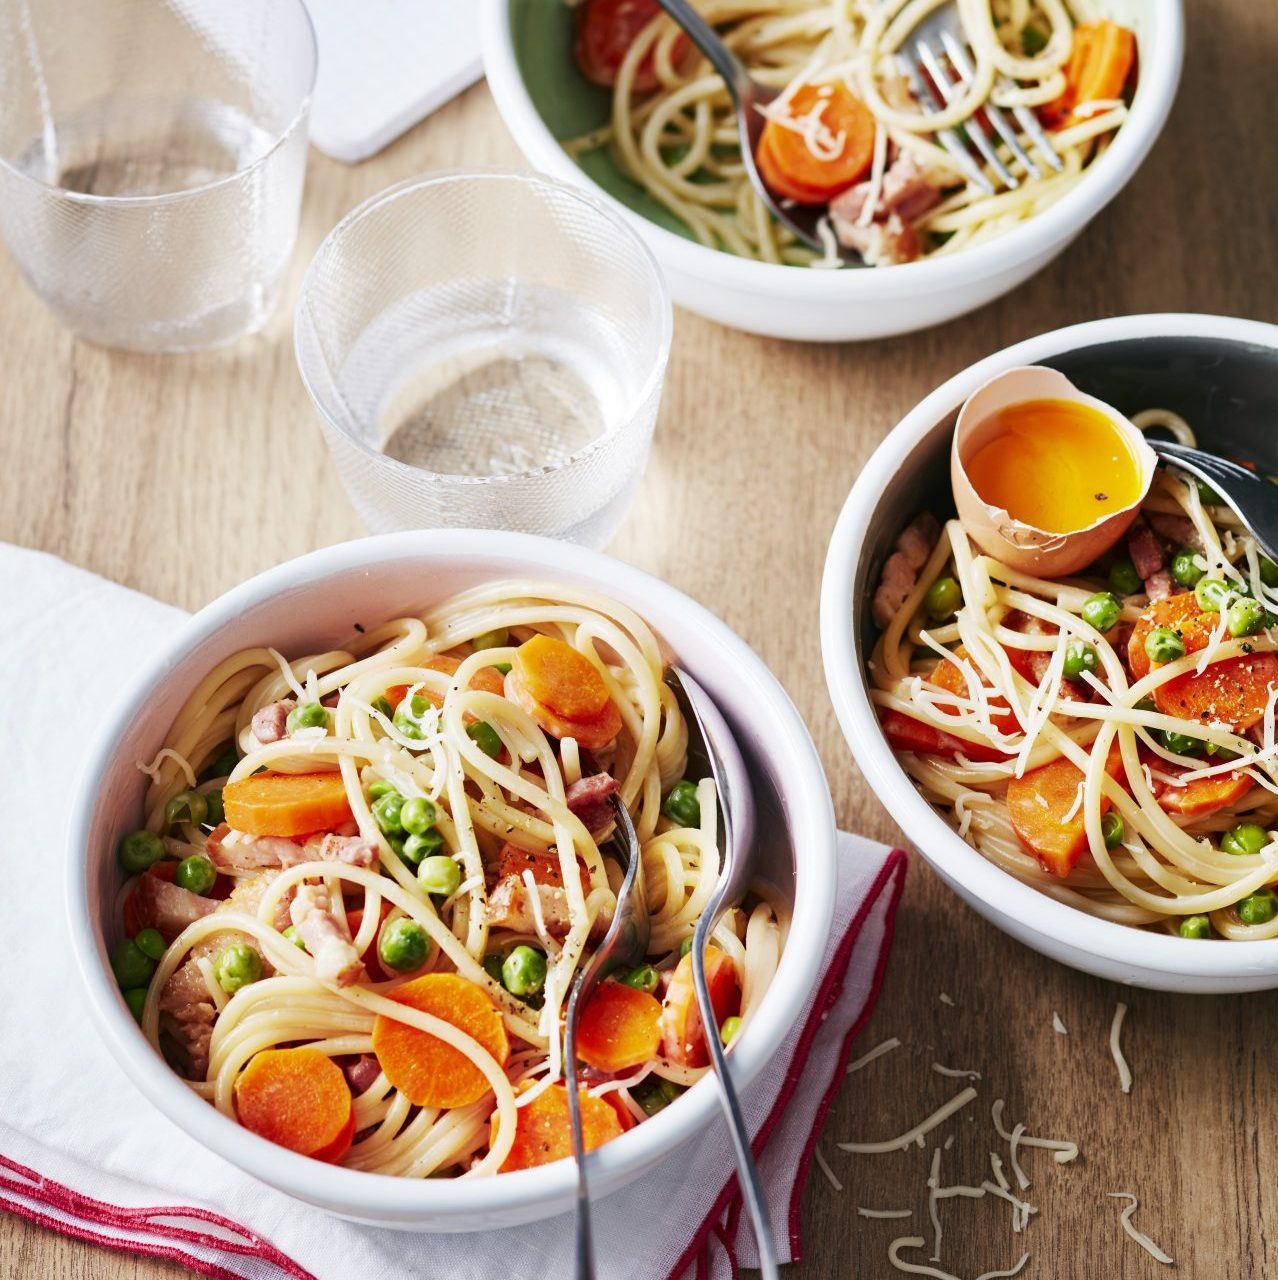 Spaghettis à la carbonara aux petits légumes